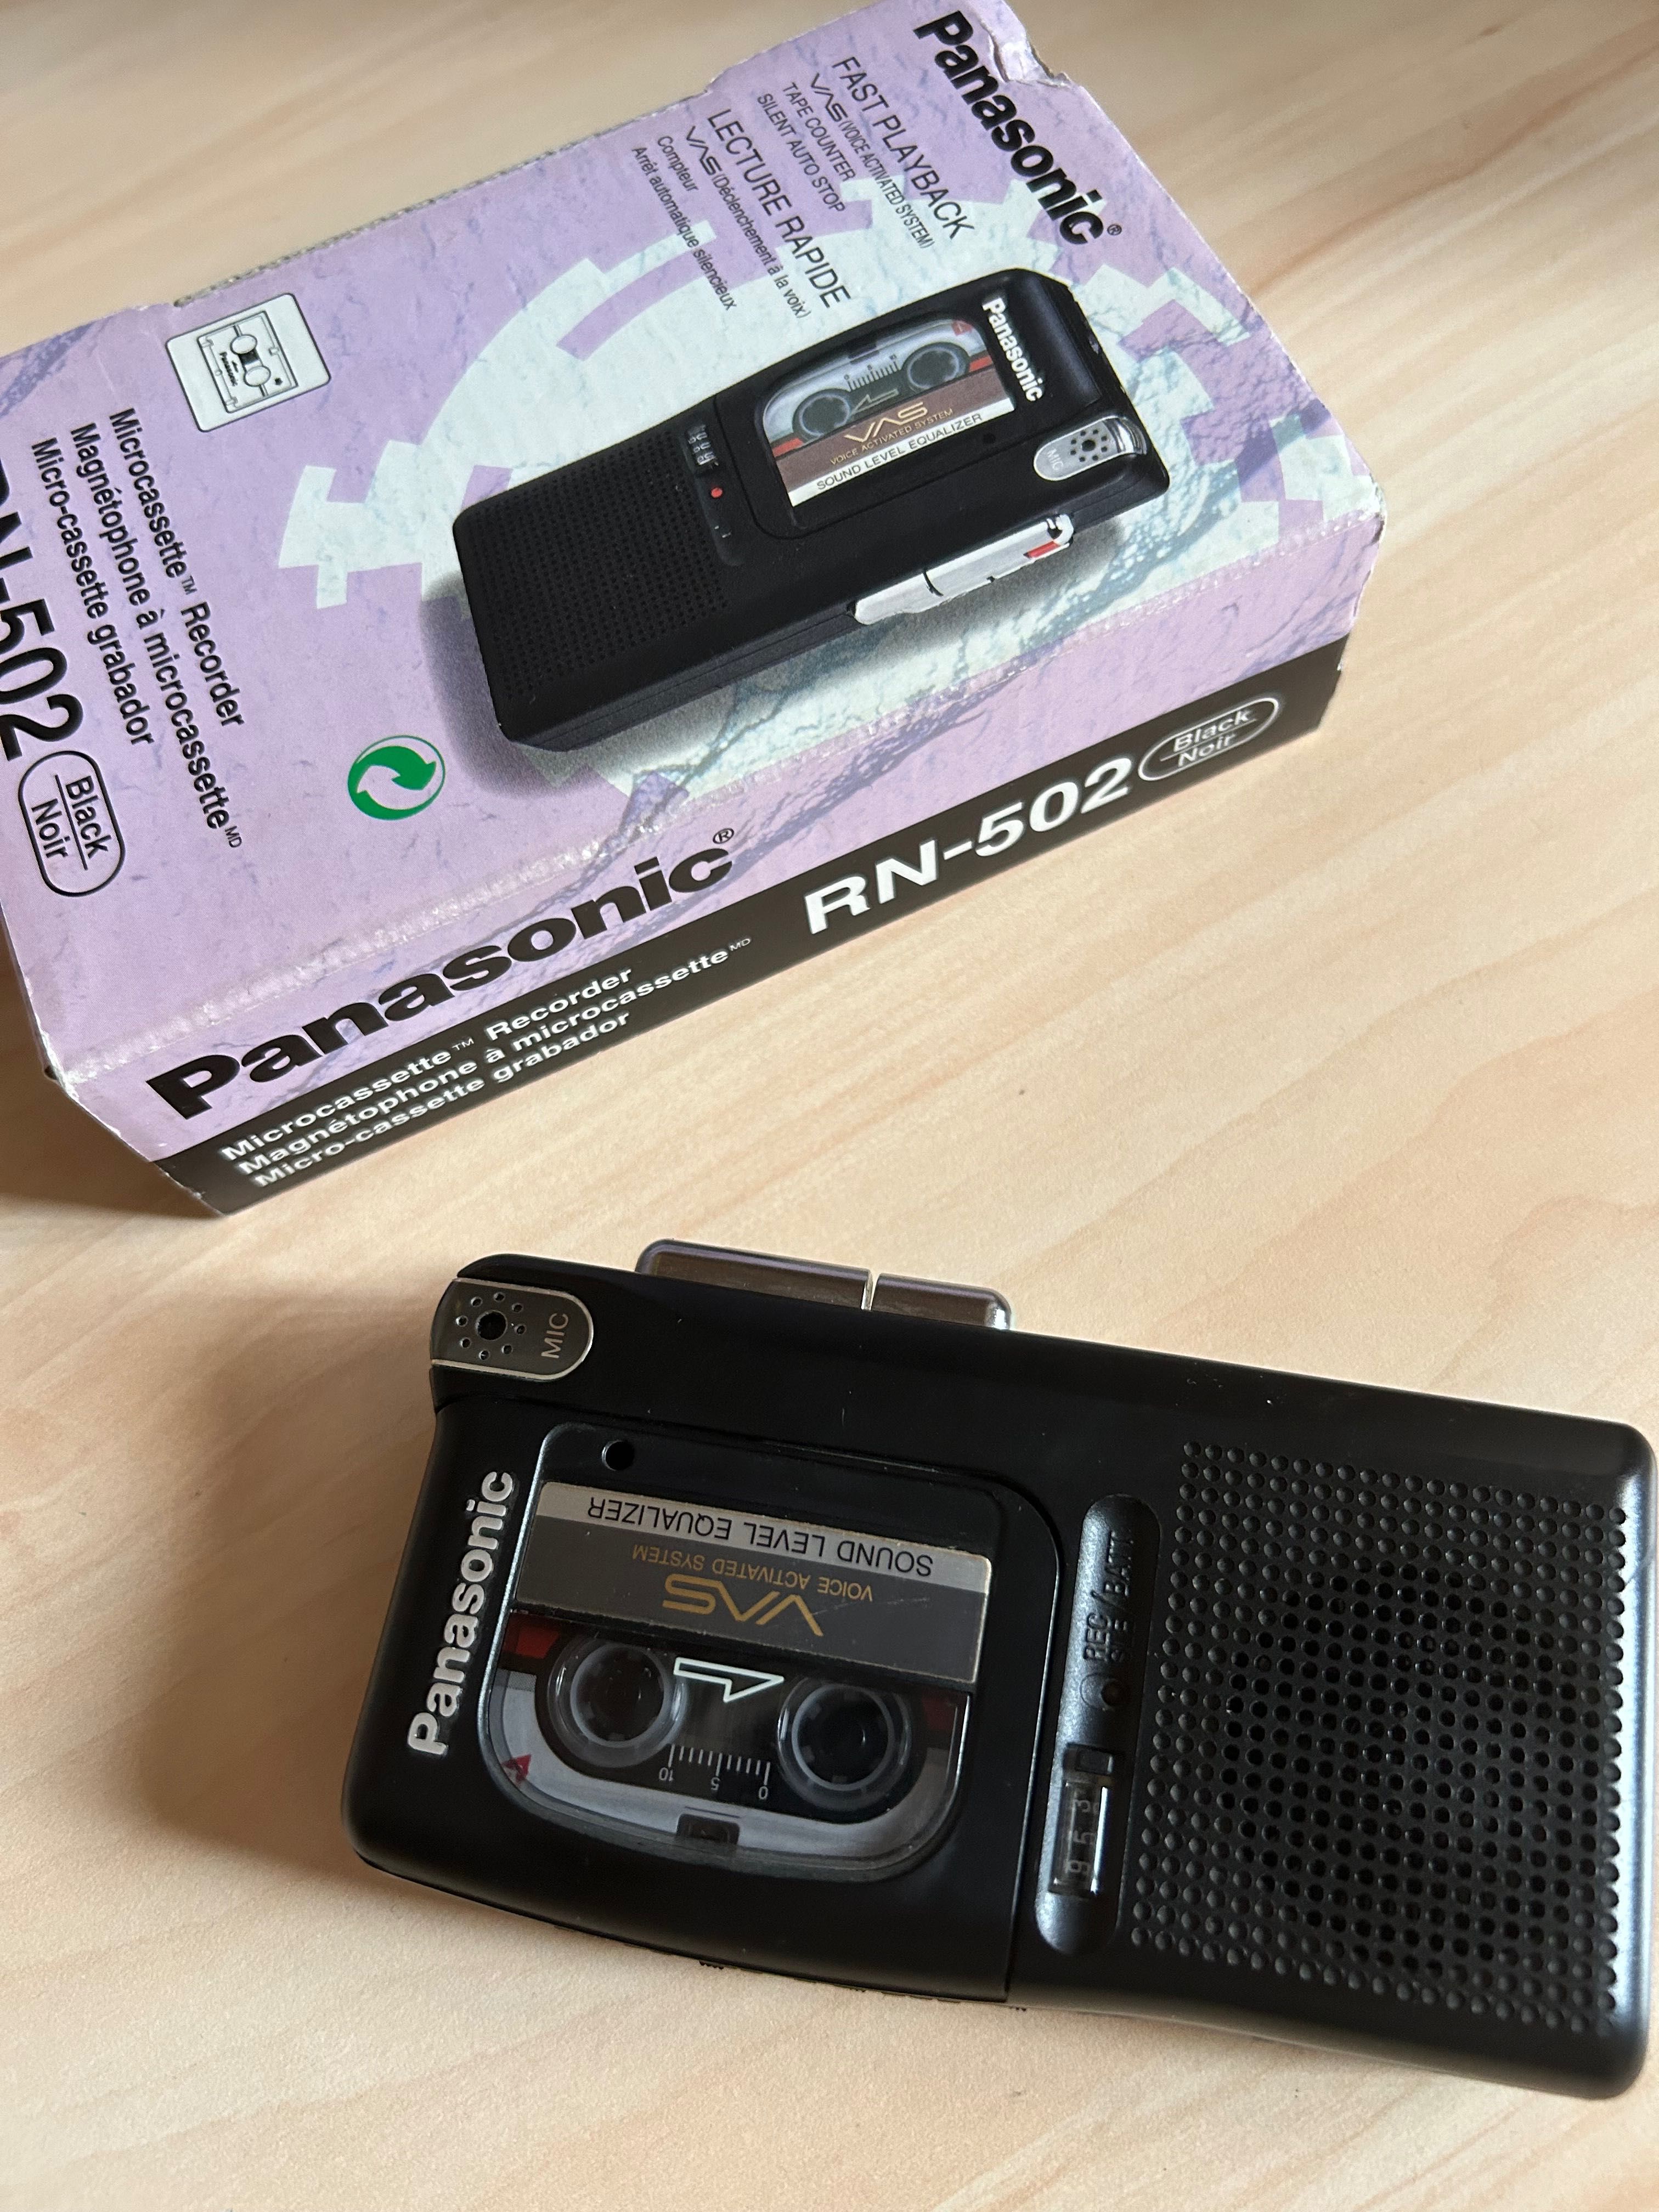 Reportofon mini Panasonic RN-502 + 1 caseta